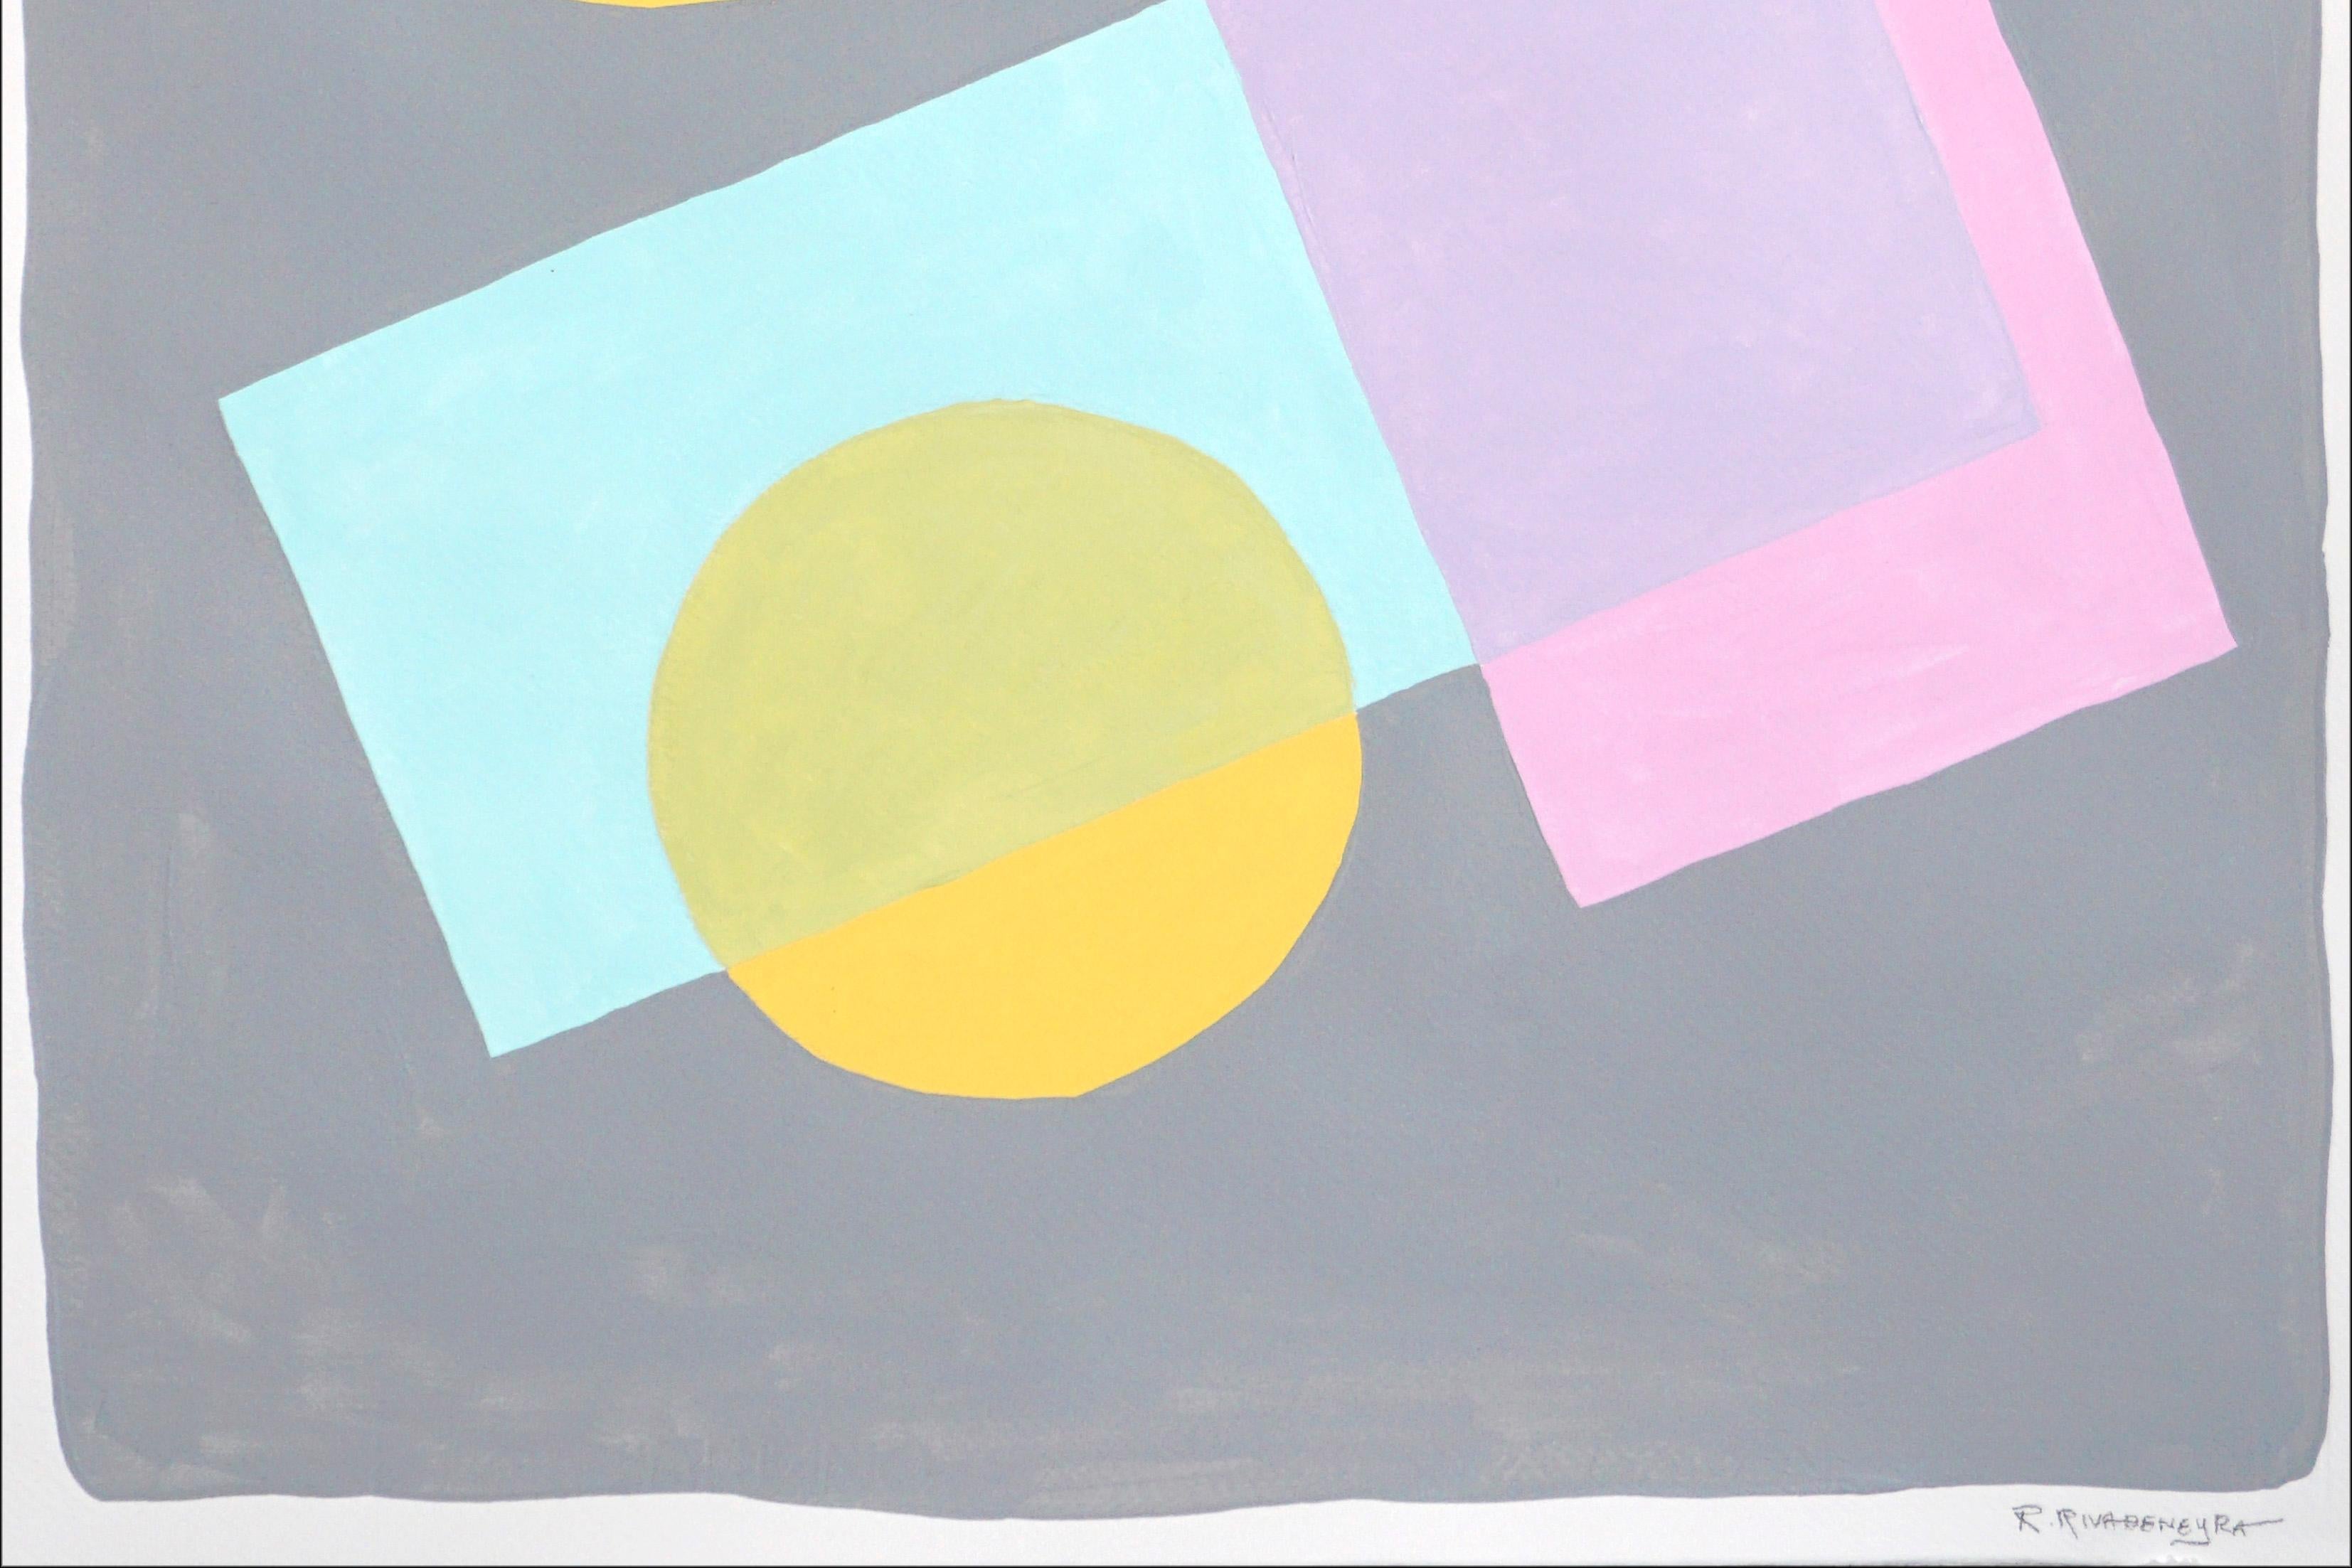 Formes constructivistes au pastel, peinture géométrique aux tons doux, bleu, rose, jaune - Constructiviste Painting par Ryan Rivadeneyra